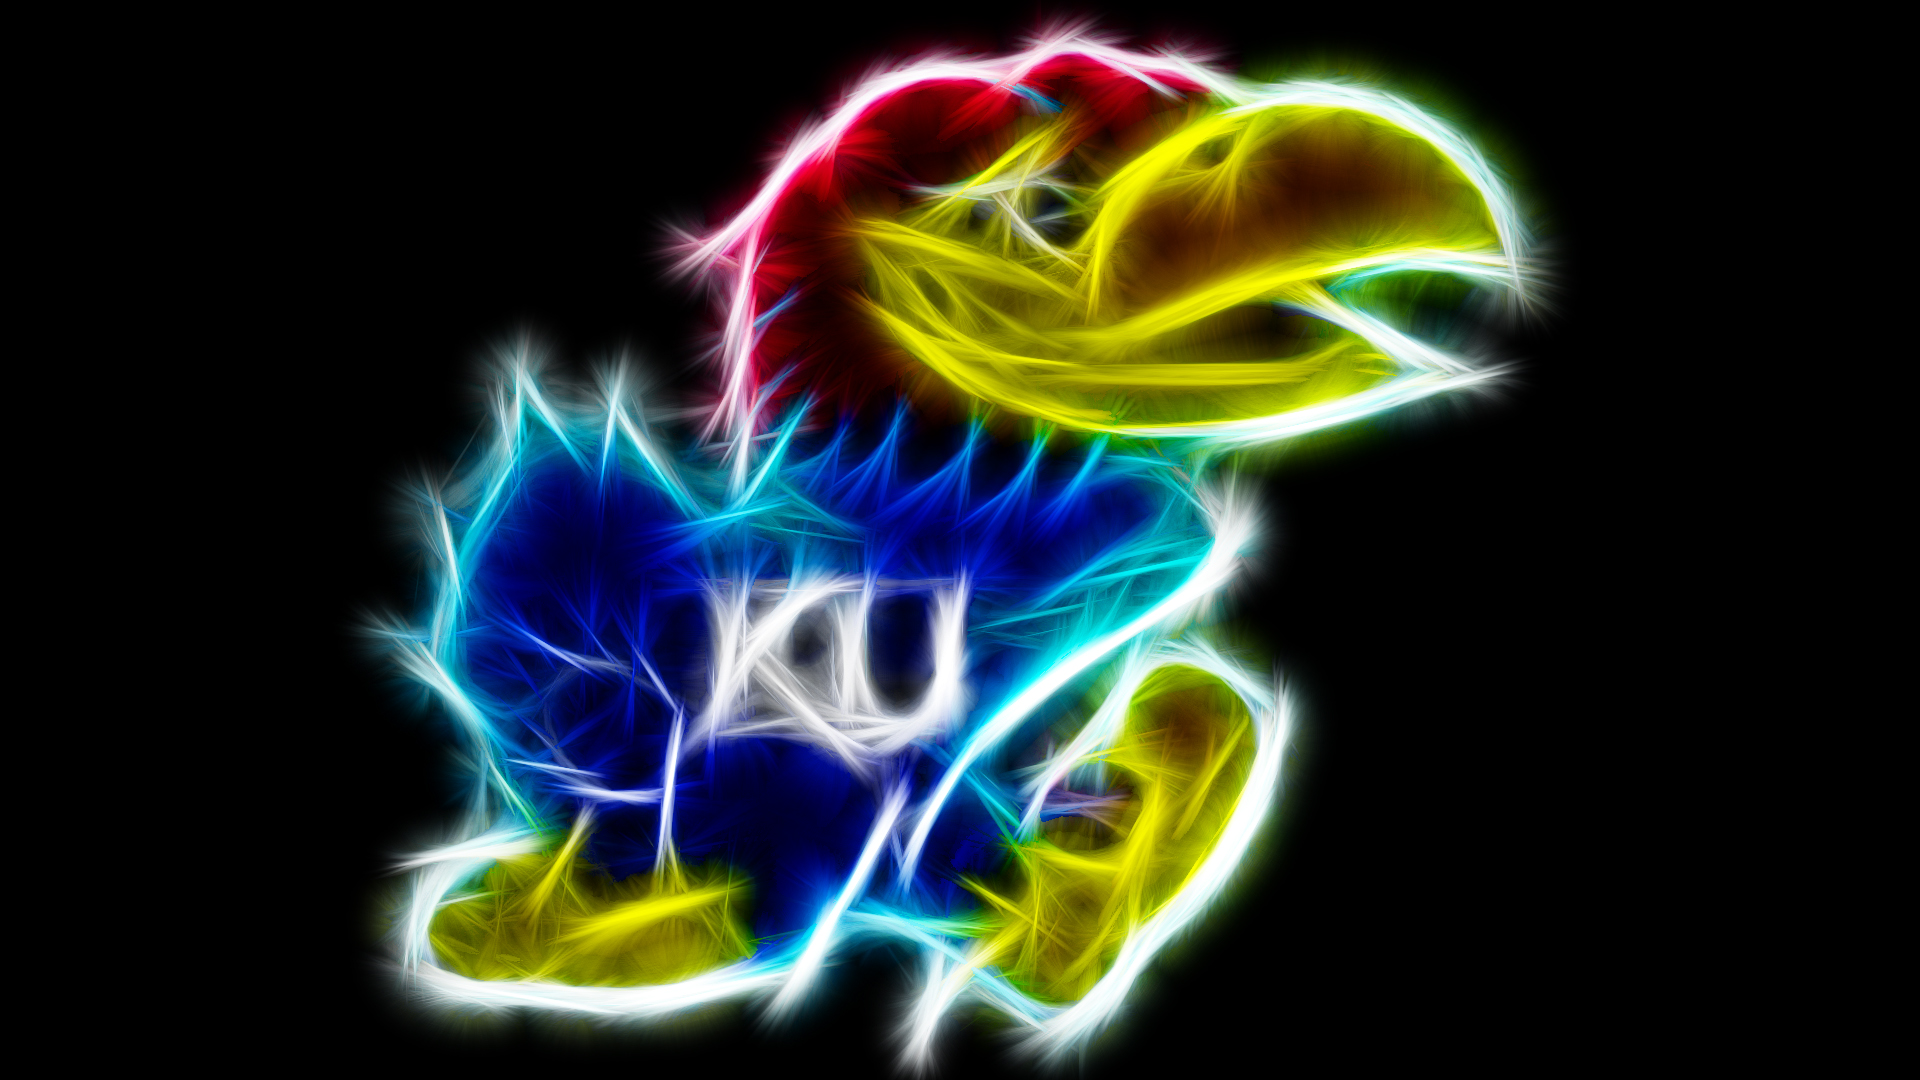 University Of Kansas By Theblacksavior